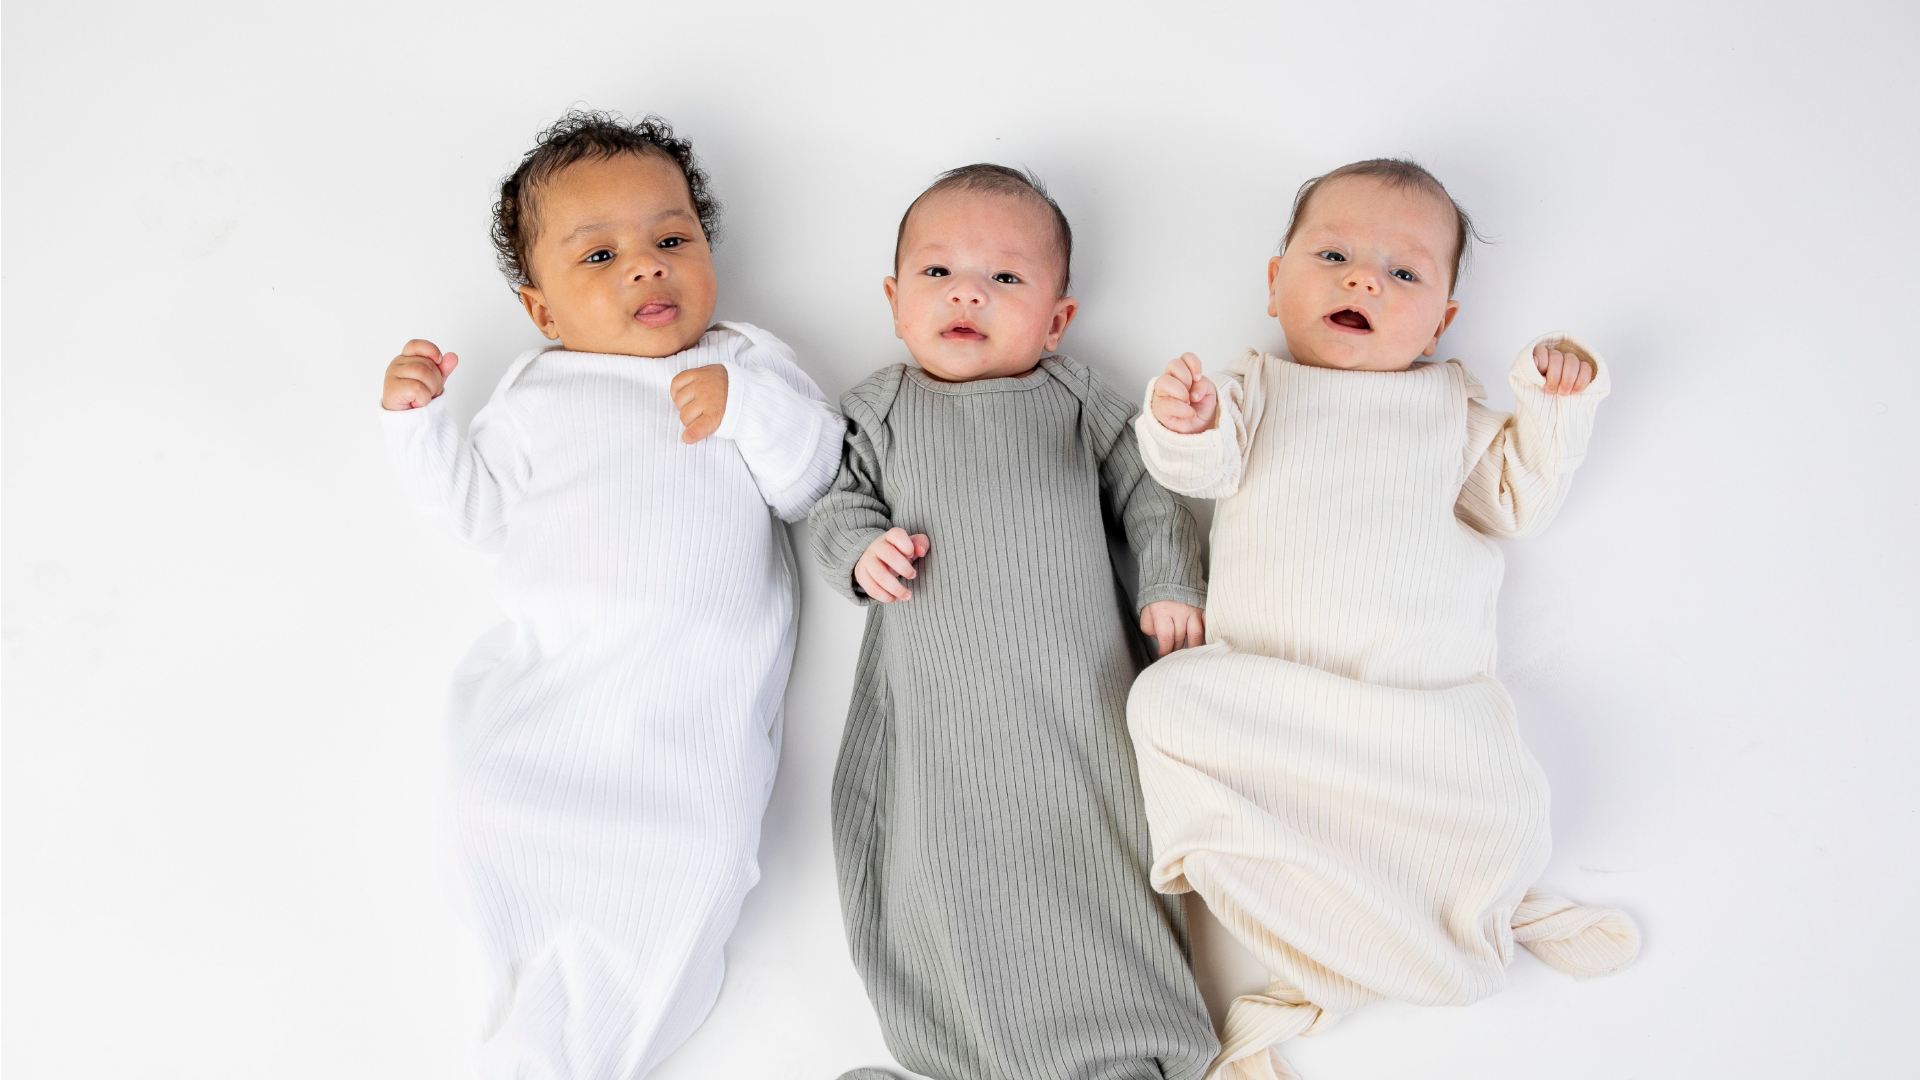 What Are Baby Development Milestones?